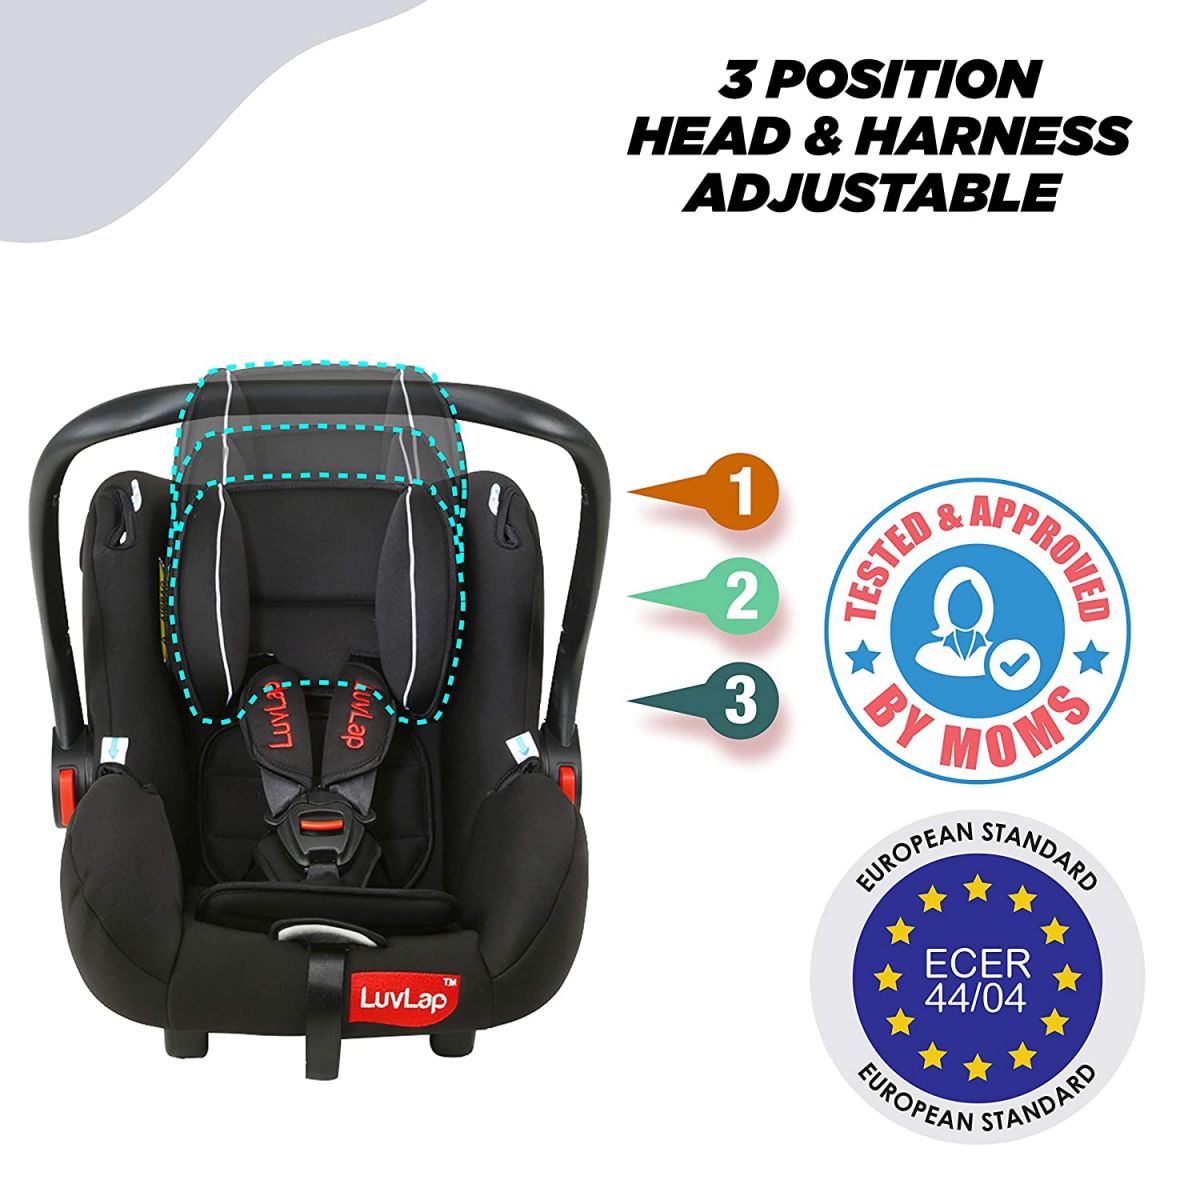 LuvLap Infant Baby Car Seat cum Carry Cot, Black